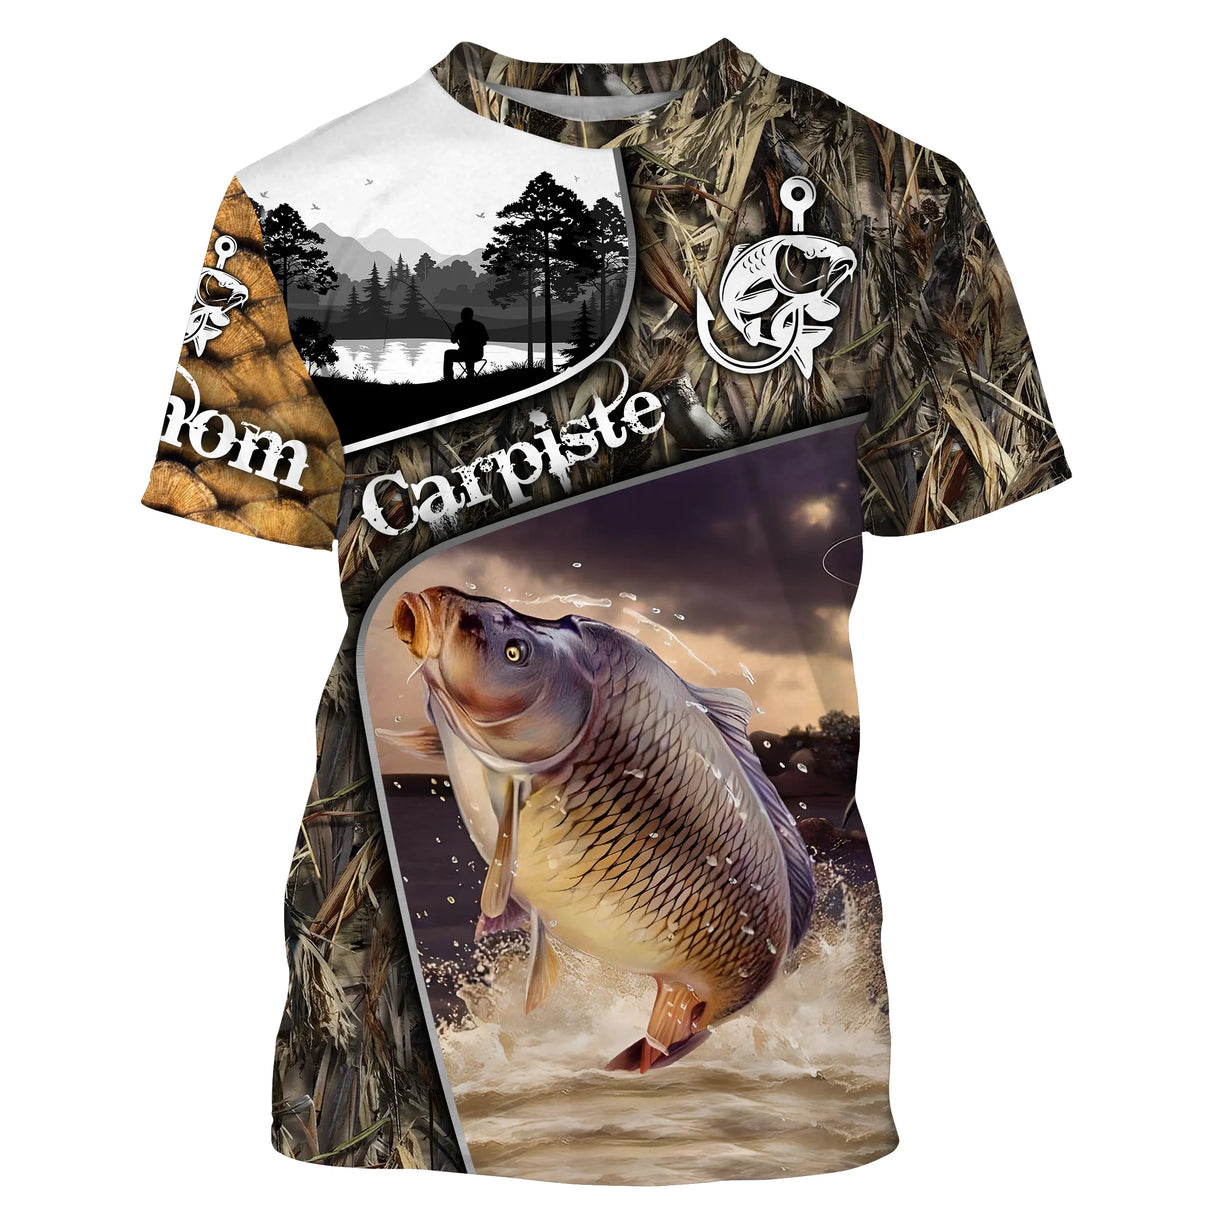 T-shirt Personnalisé Carpiste, Cadeau Pêcheur, Pêche De La Carpe - CT09092230